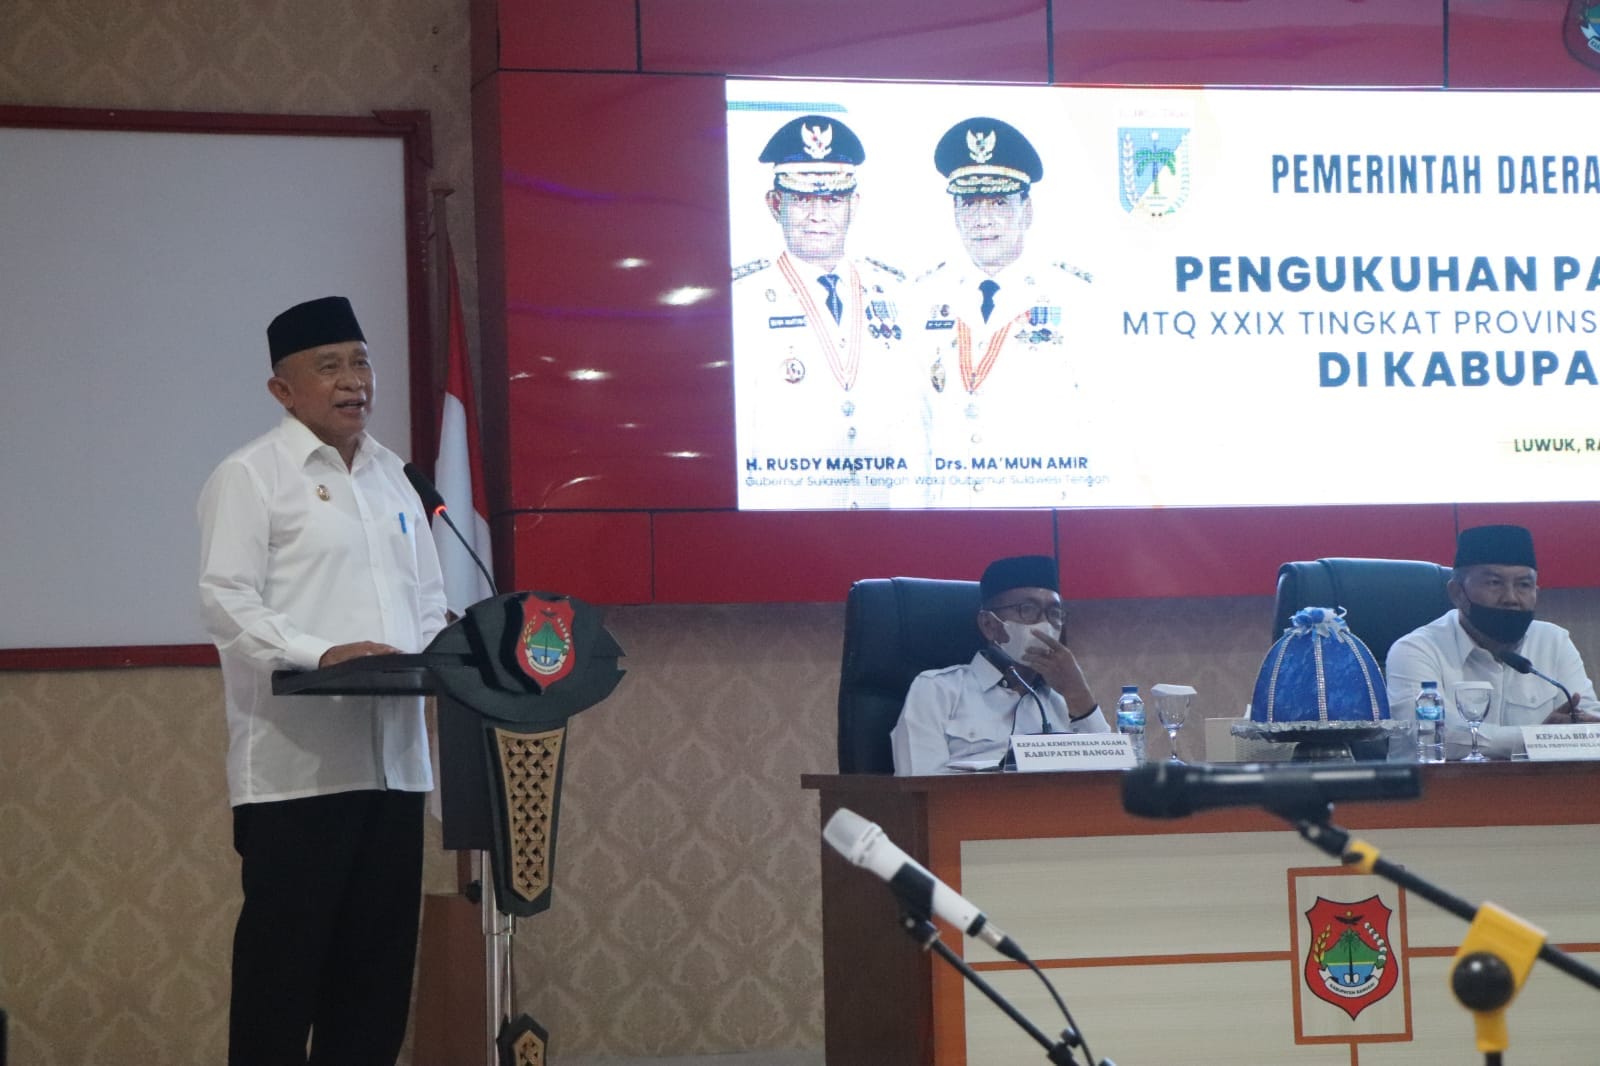 Wakili Gubernur Sulteng, Staf Ahli Kukuhkan Panitia Pelaksana MTQ XXIX Tingkat Provinsi